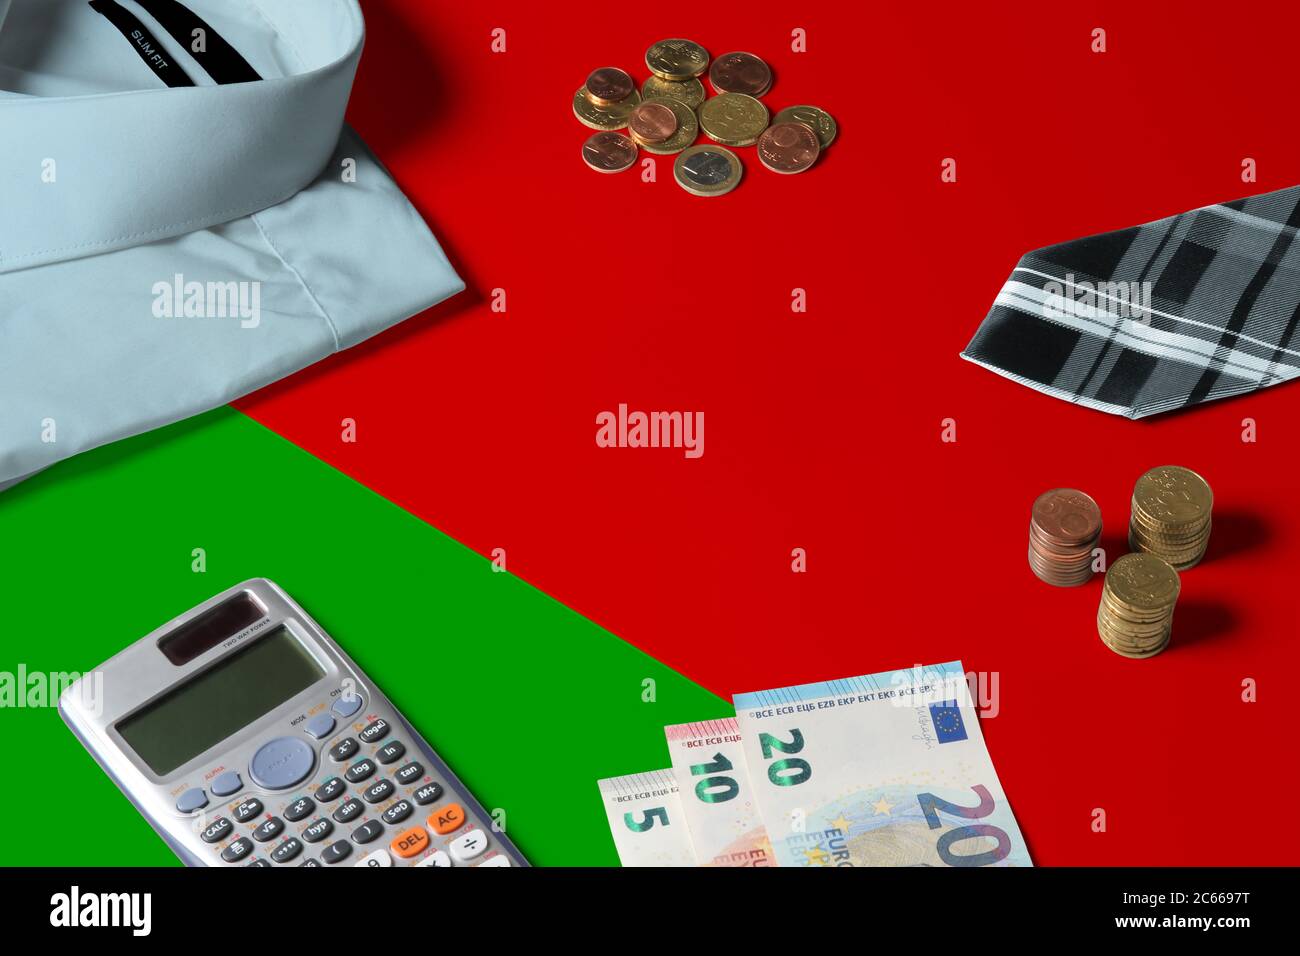 Belarus Flagge auf Minimal Money Concept Table. Münzen und Finanzobjekte auf Flaggenoberfläche. Thema der Volkswirtschaft. Stockfoto